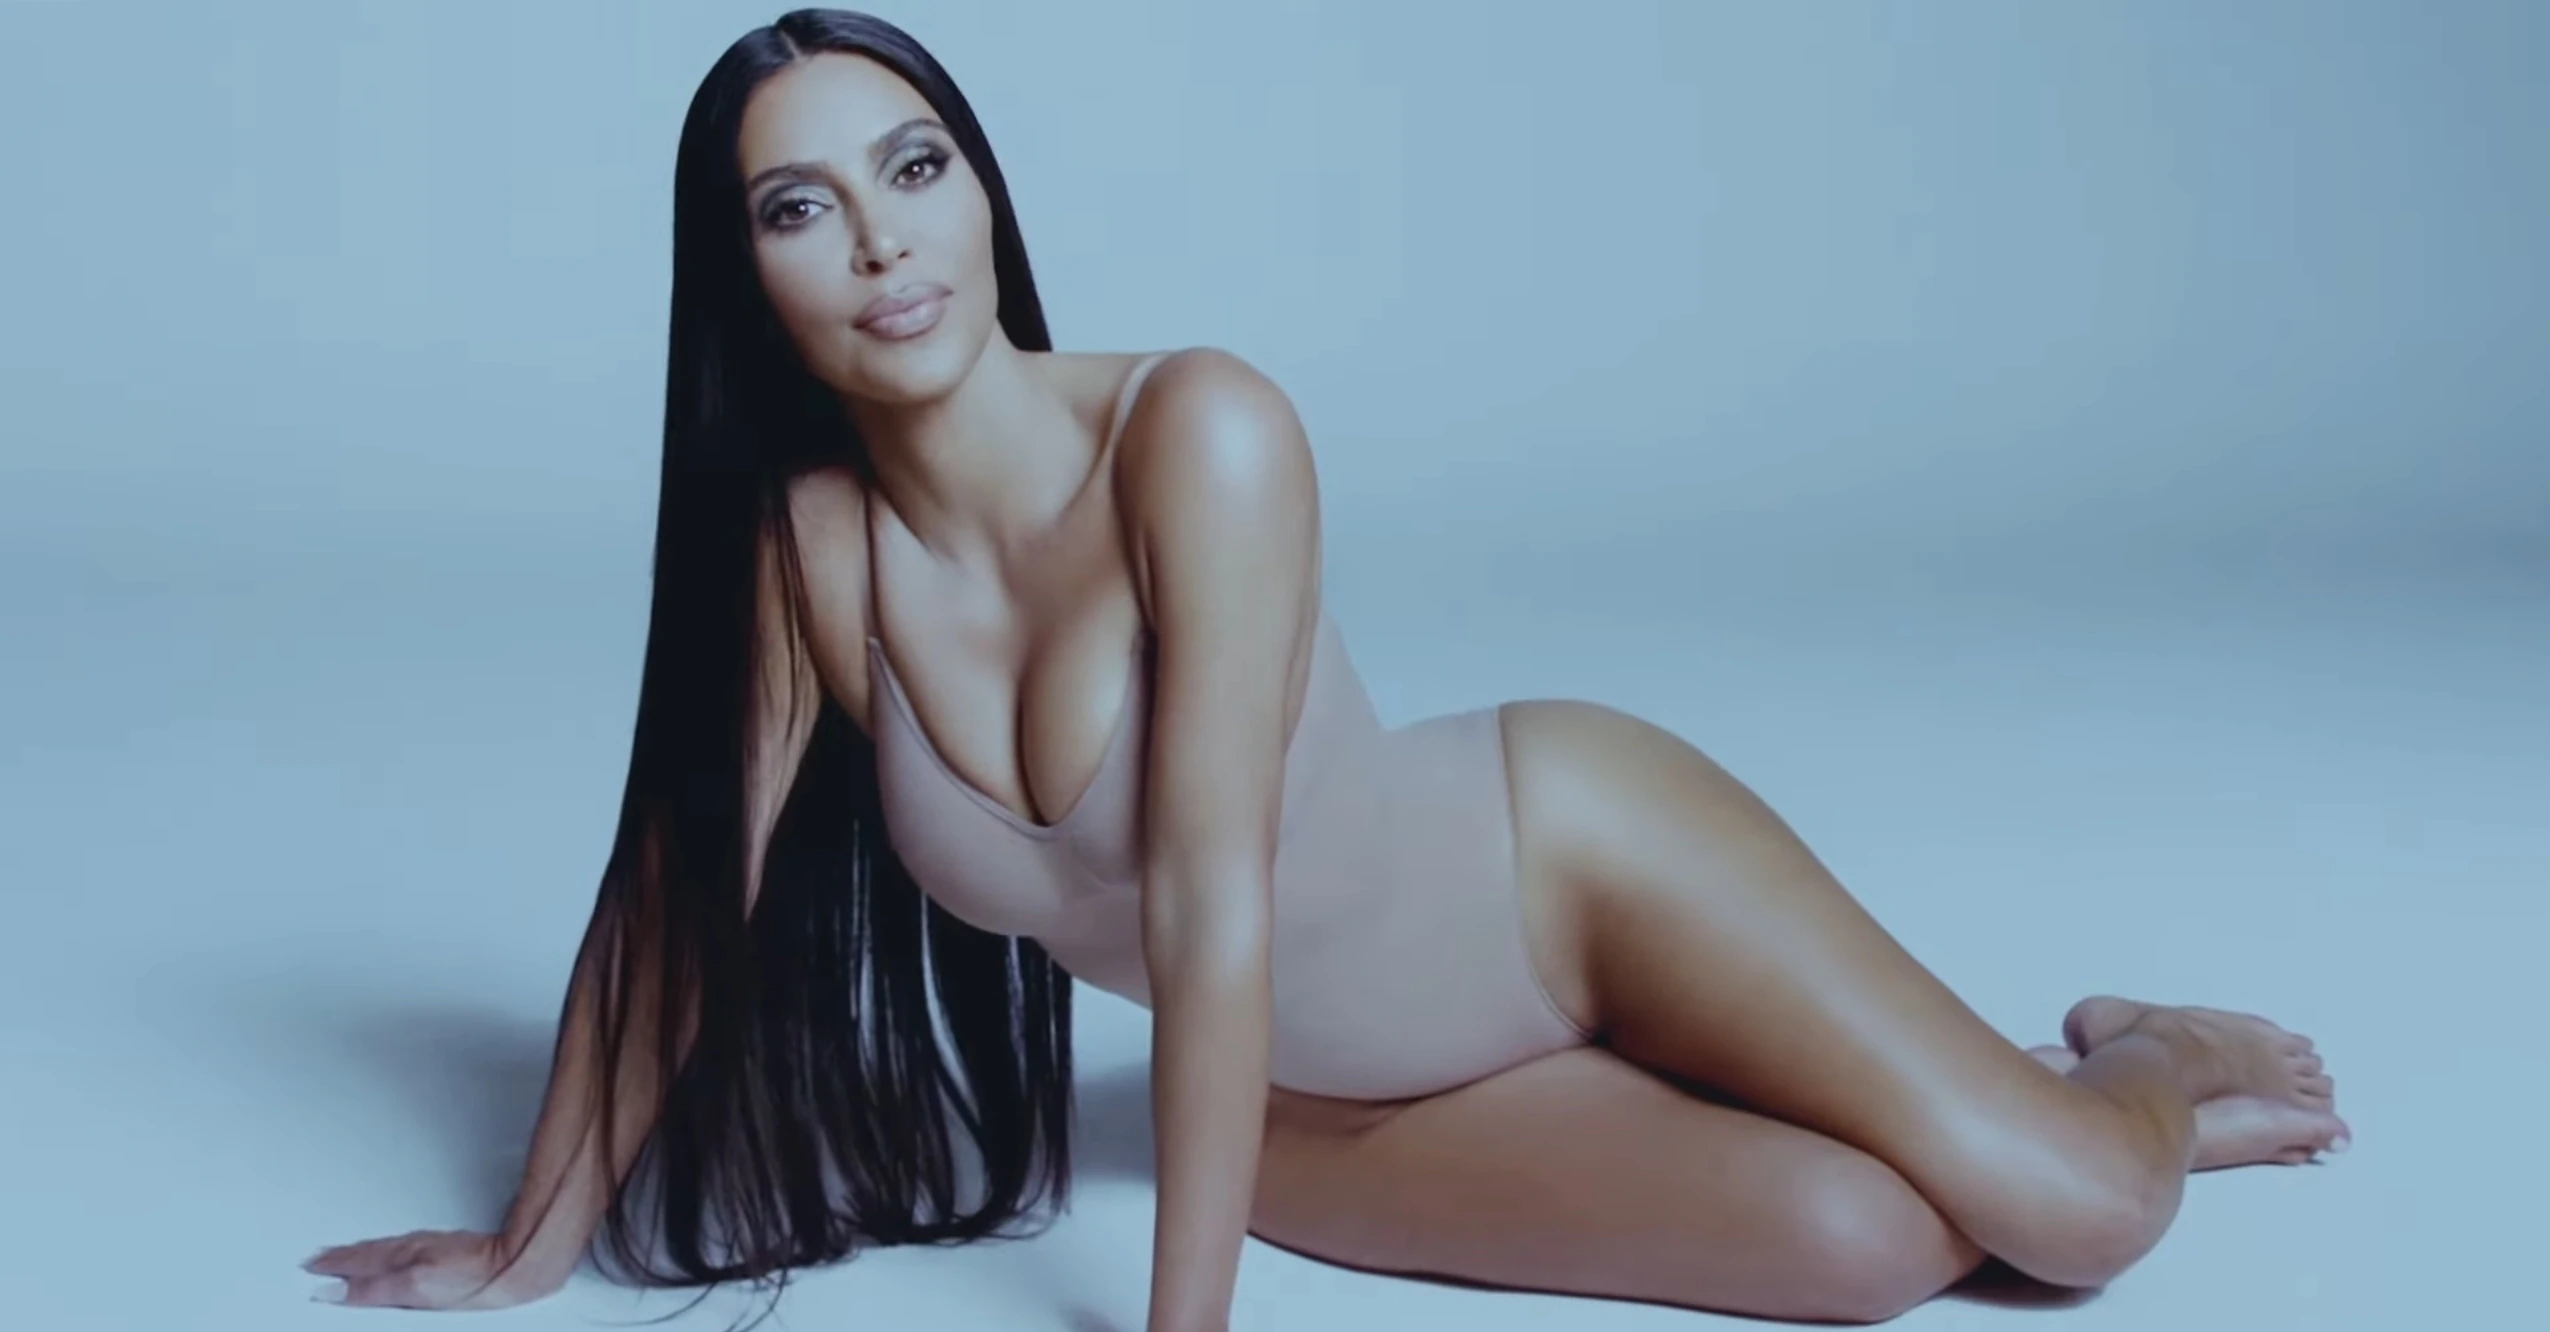 Kim Kardashian Bares Booty In Jock Strap For Star-Spangled Magazine Cover